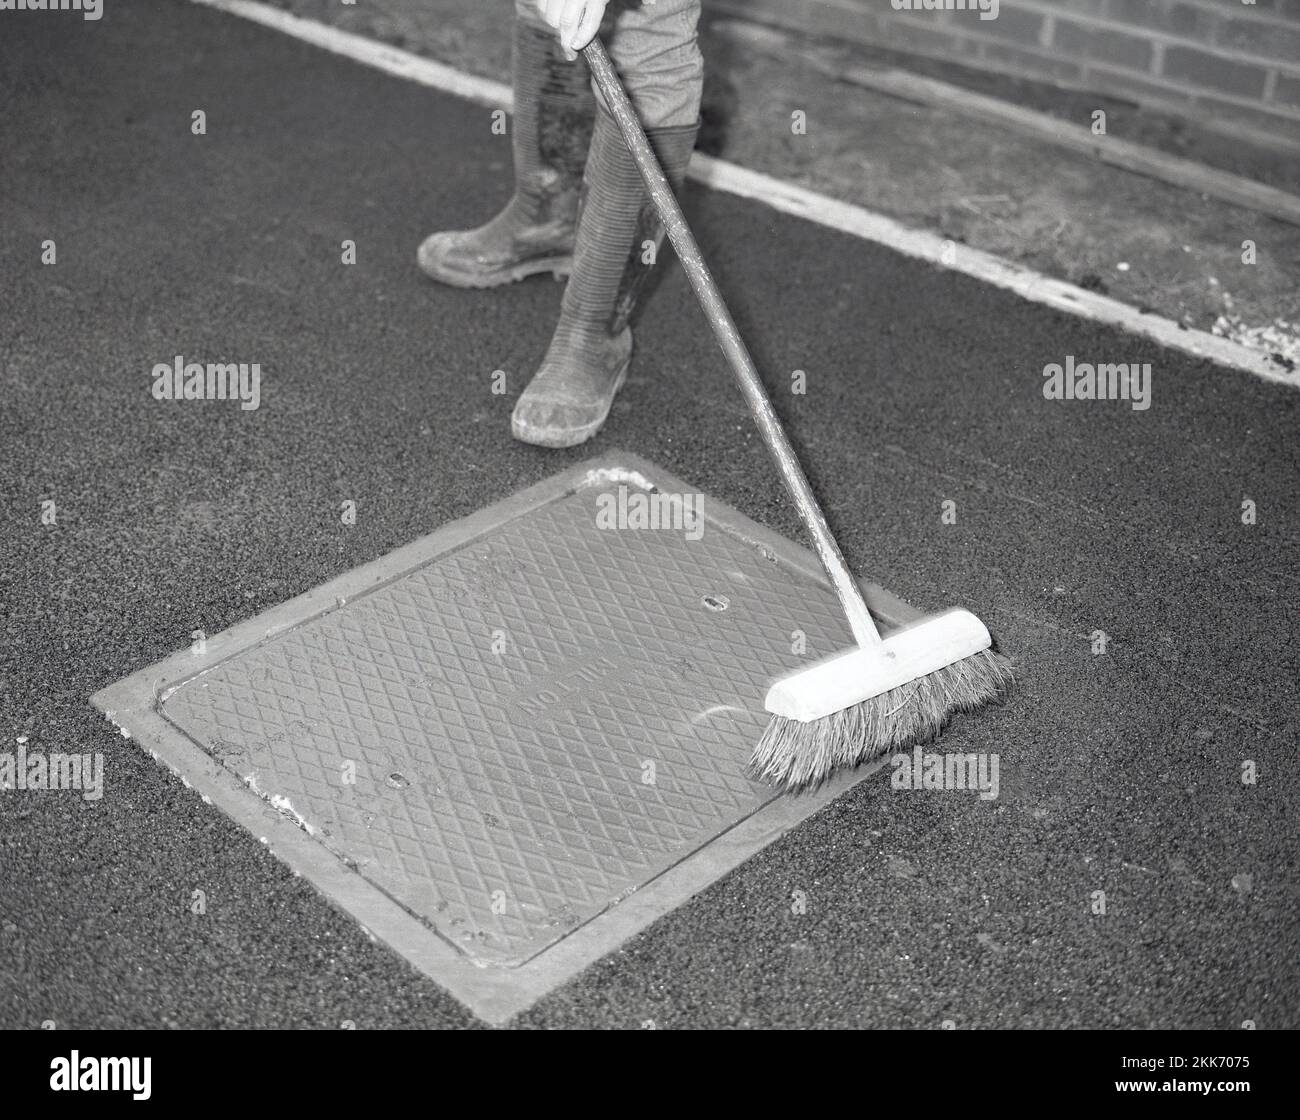 1980s, rifacendosi un vialetto, un lavoratore che usa una scopa per spazzolare qualsiasi residuo di macadam nero rimasto su un tombino dopo aver asfaltato un vialetto domestico, Inghilterra, Regno Unito. Foto Stock